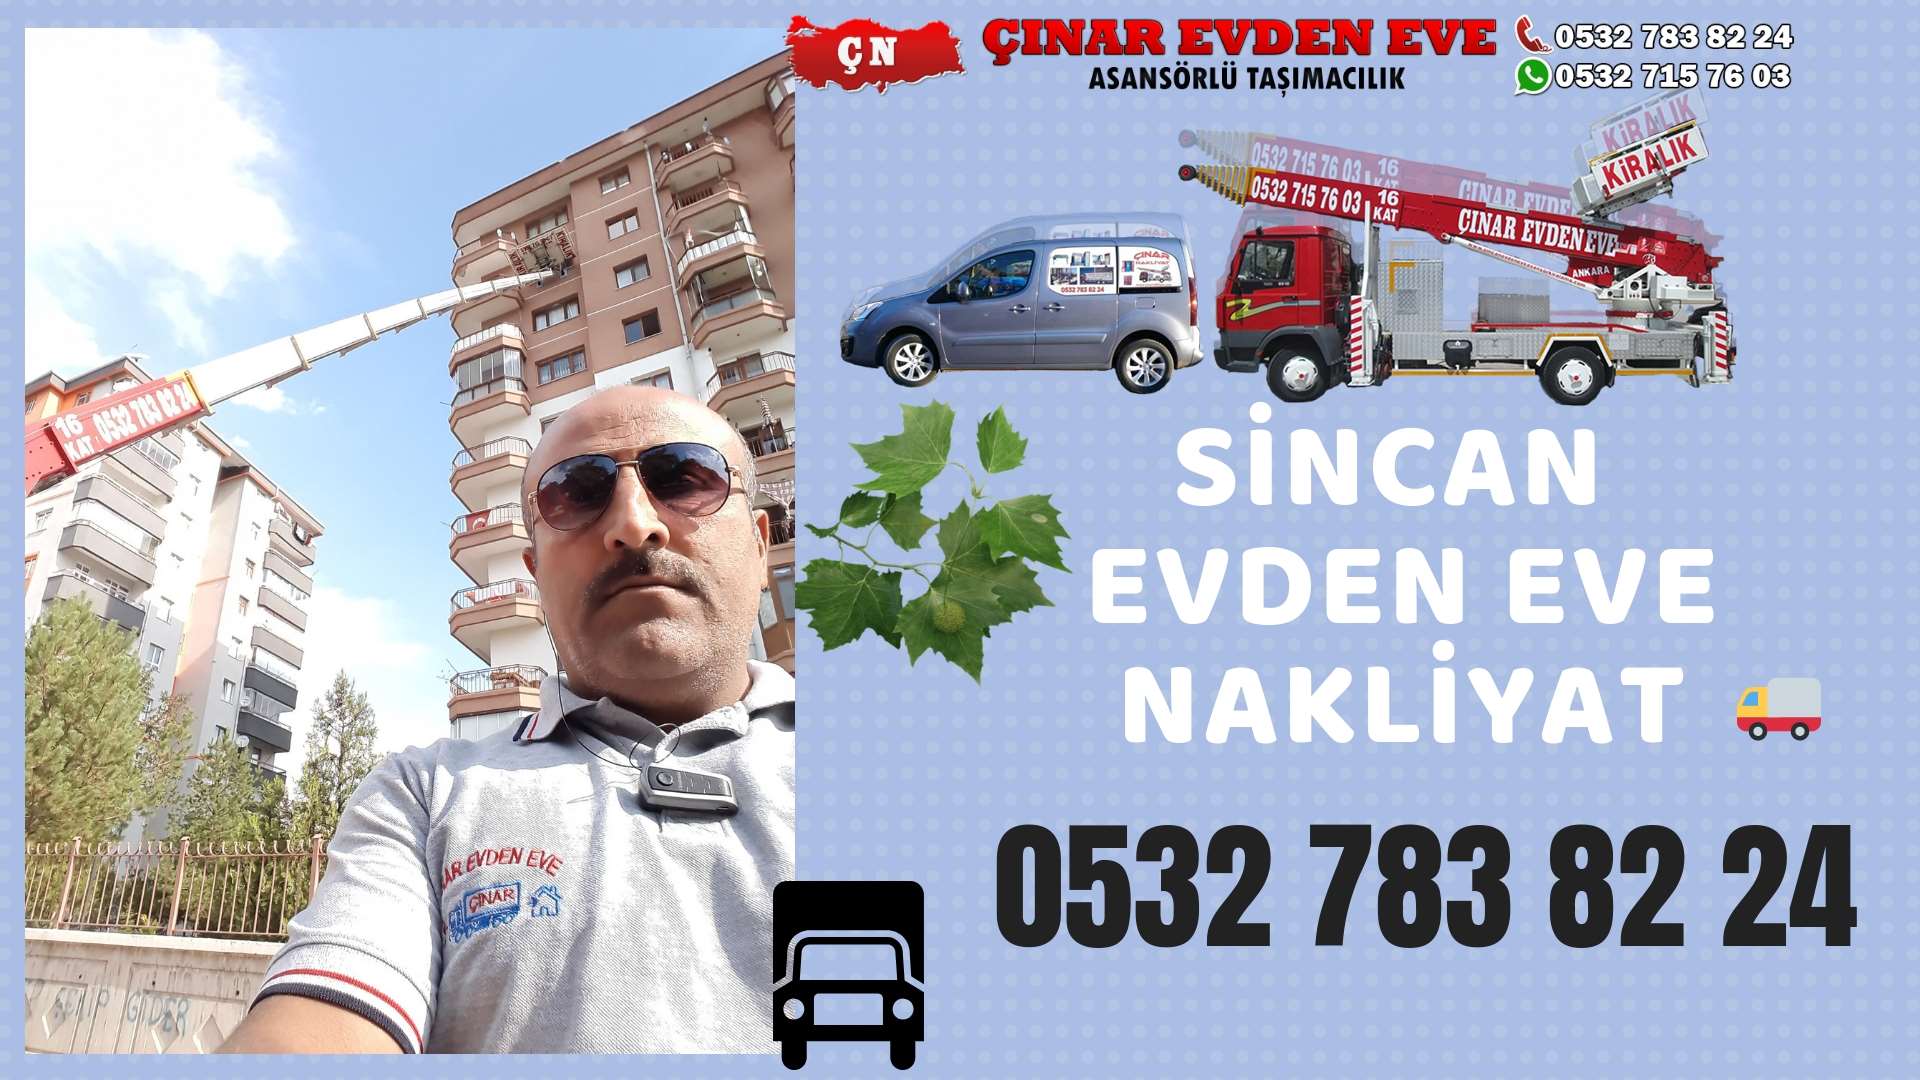 Ankara Pursaklar Evden Eve Nakliyat, Asansörlü Taşımacılık, Ofis / İş Yeri Taşıma 0532 715 76 03